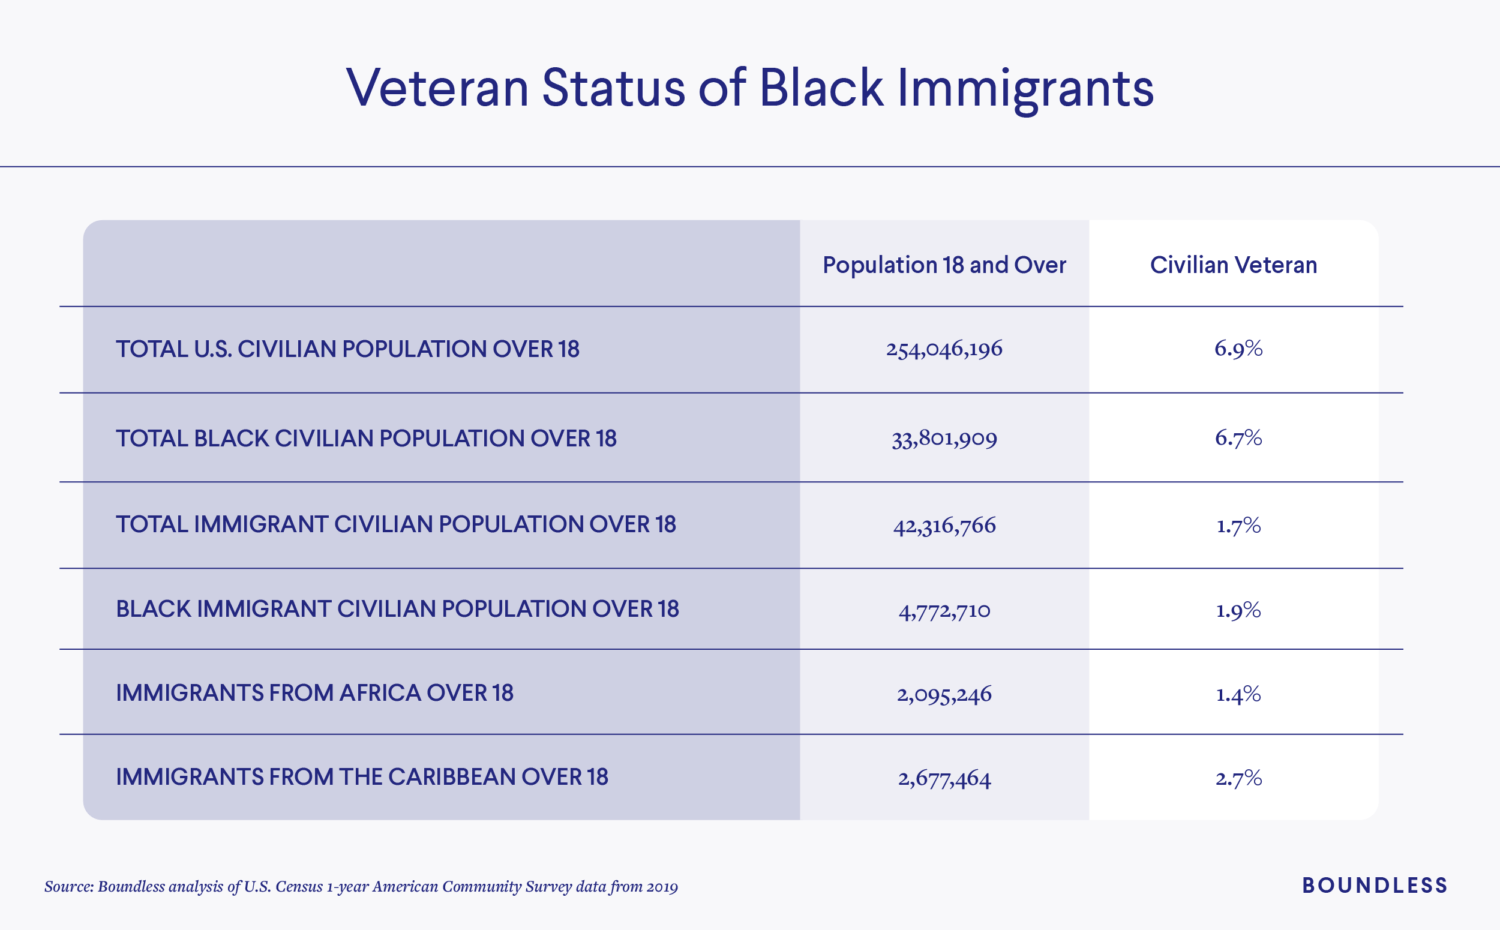 Black Immigrant Veterans